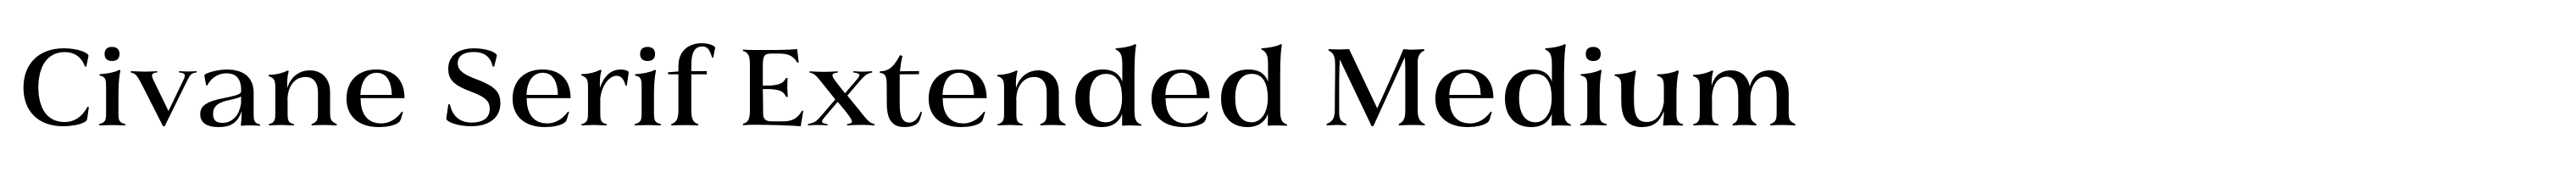 Civane Serif Extended Medium